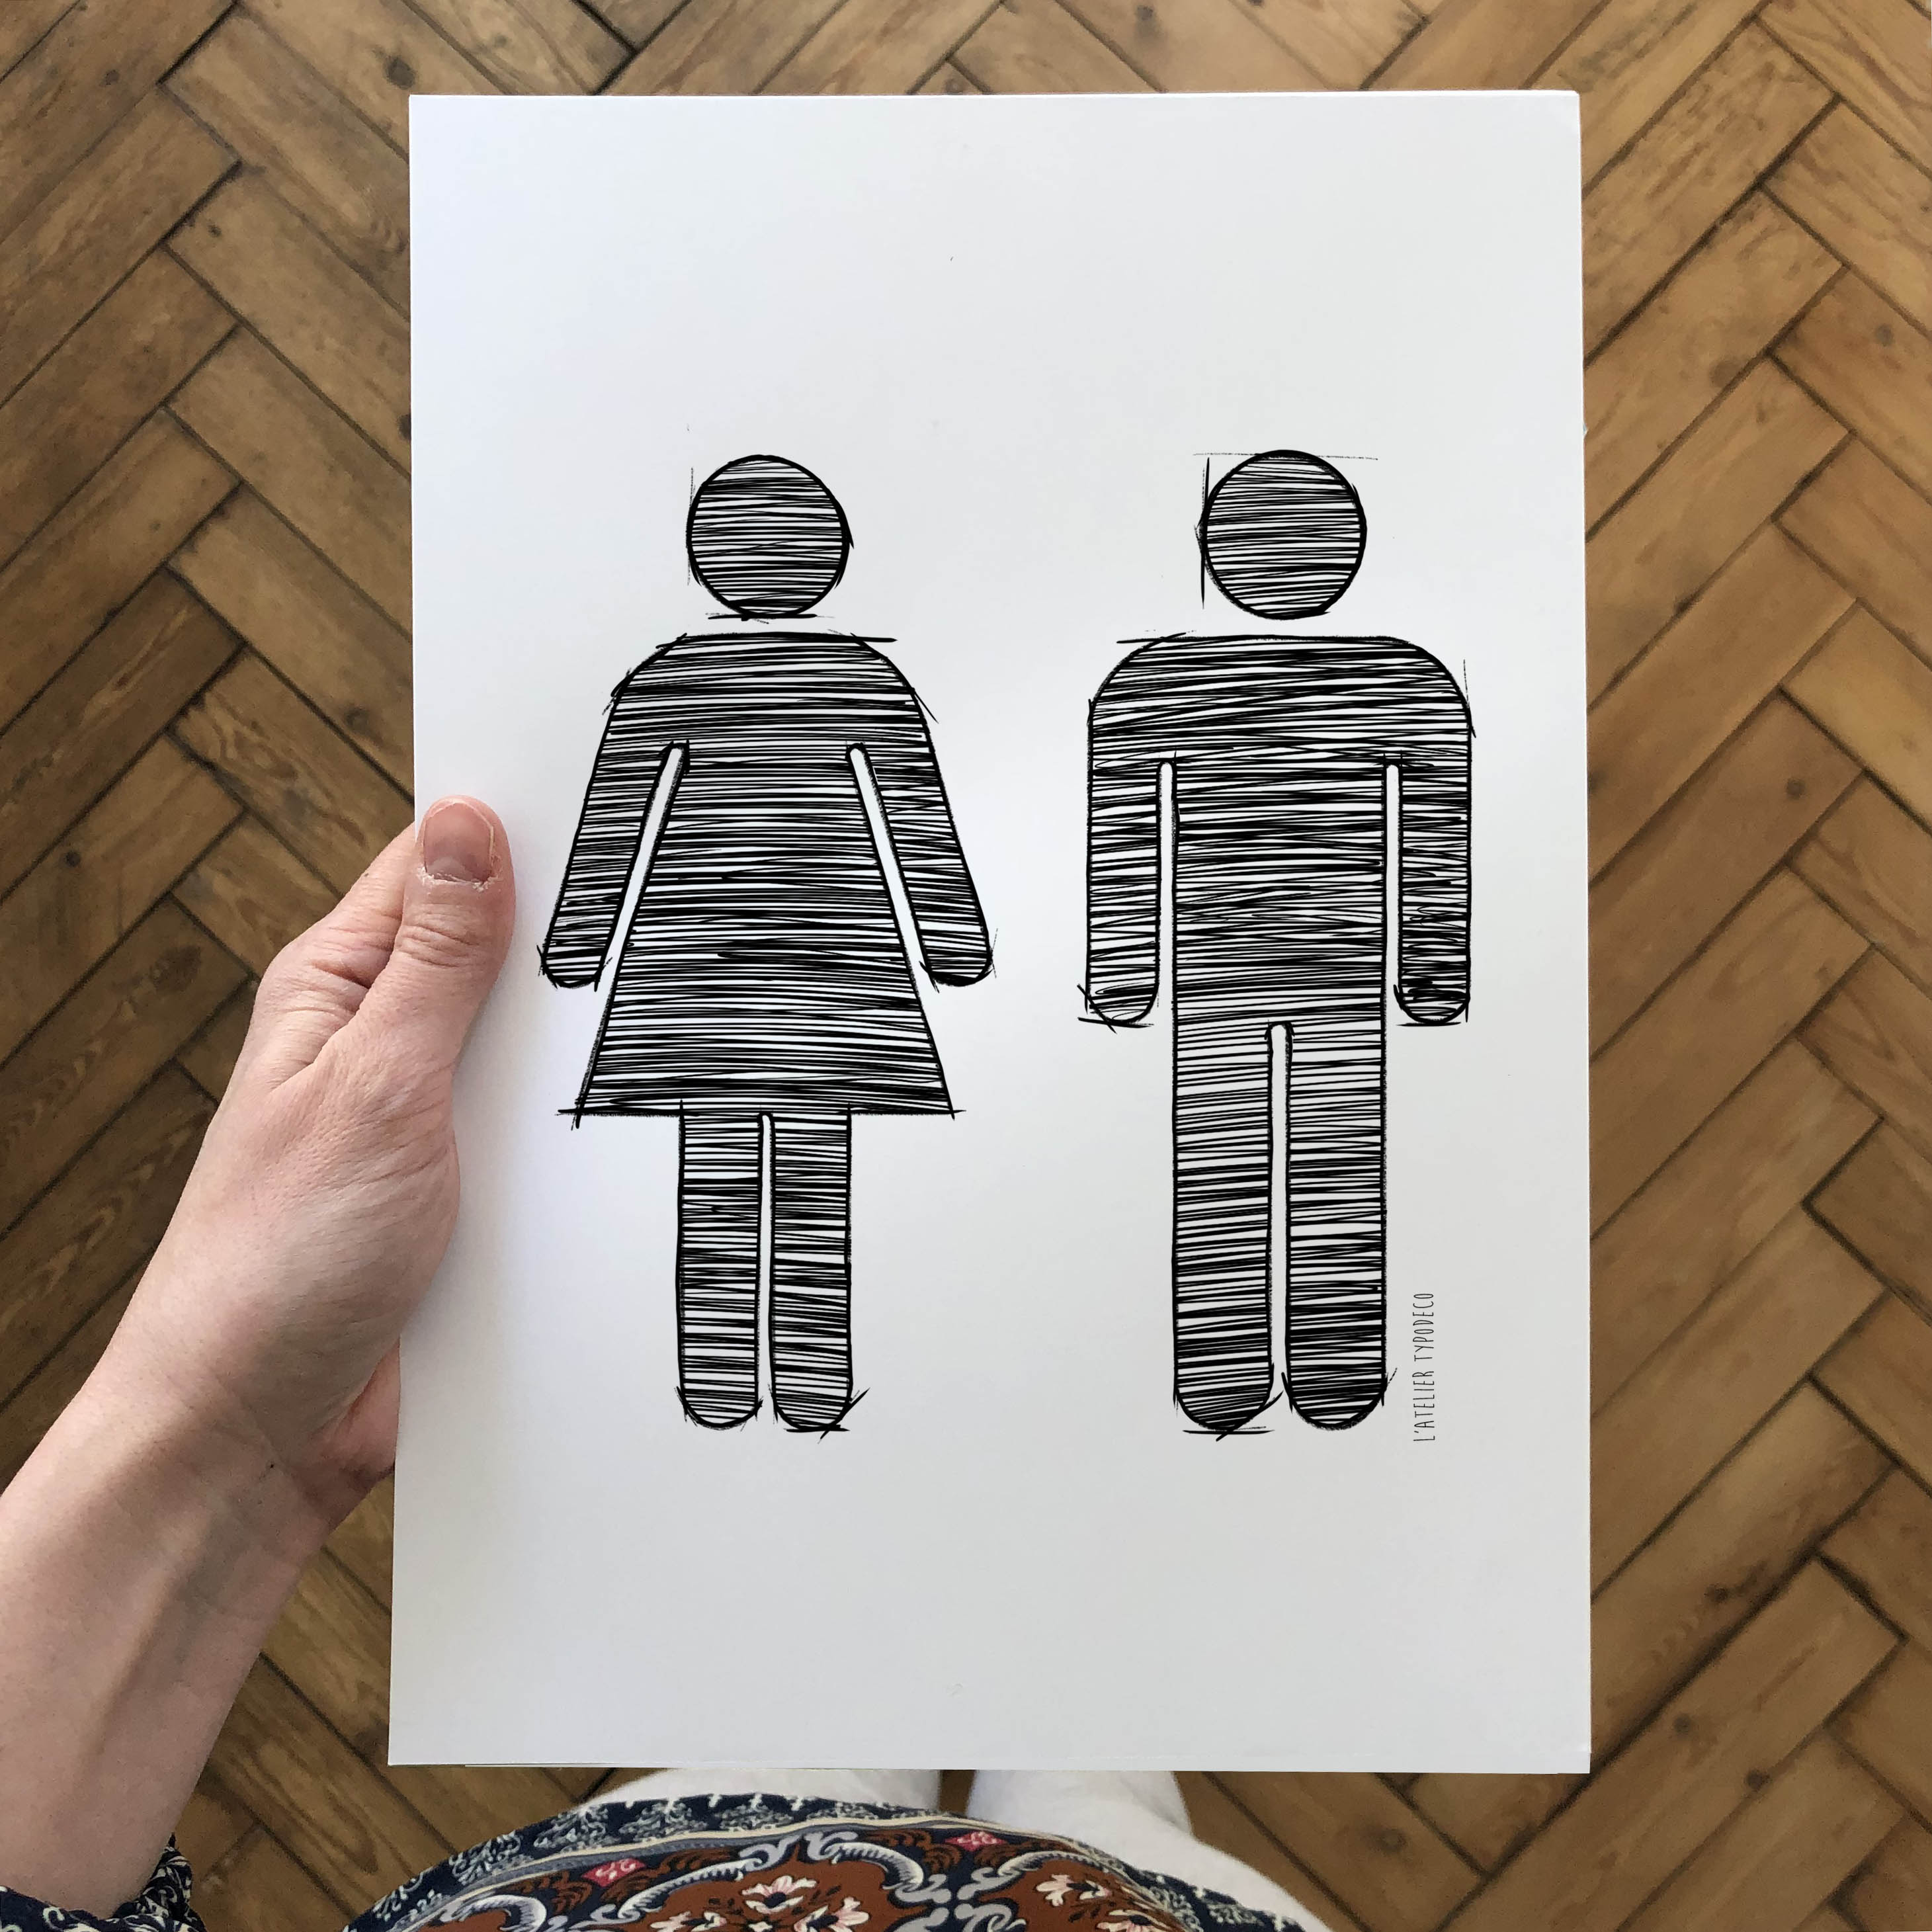 Affiche Femme sur les toilettes